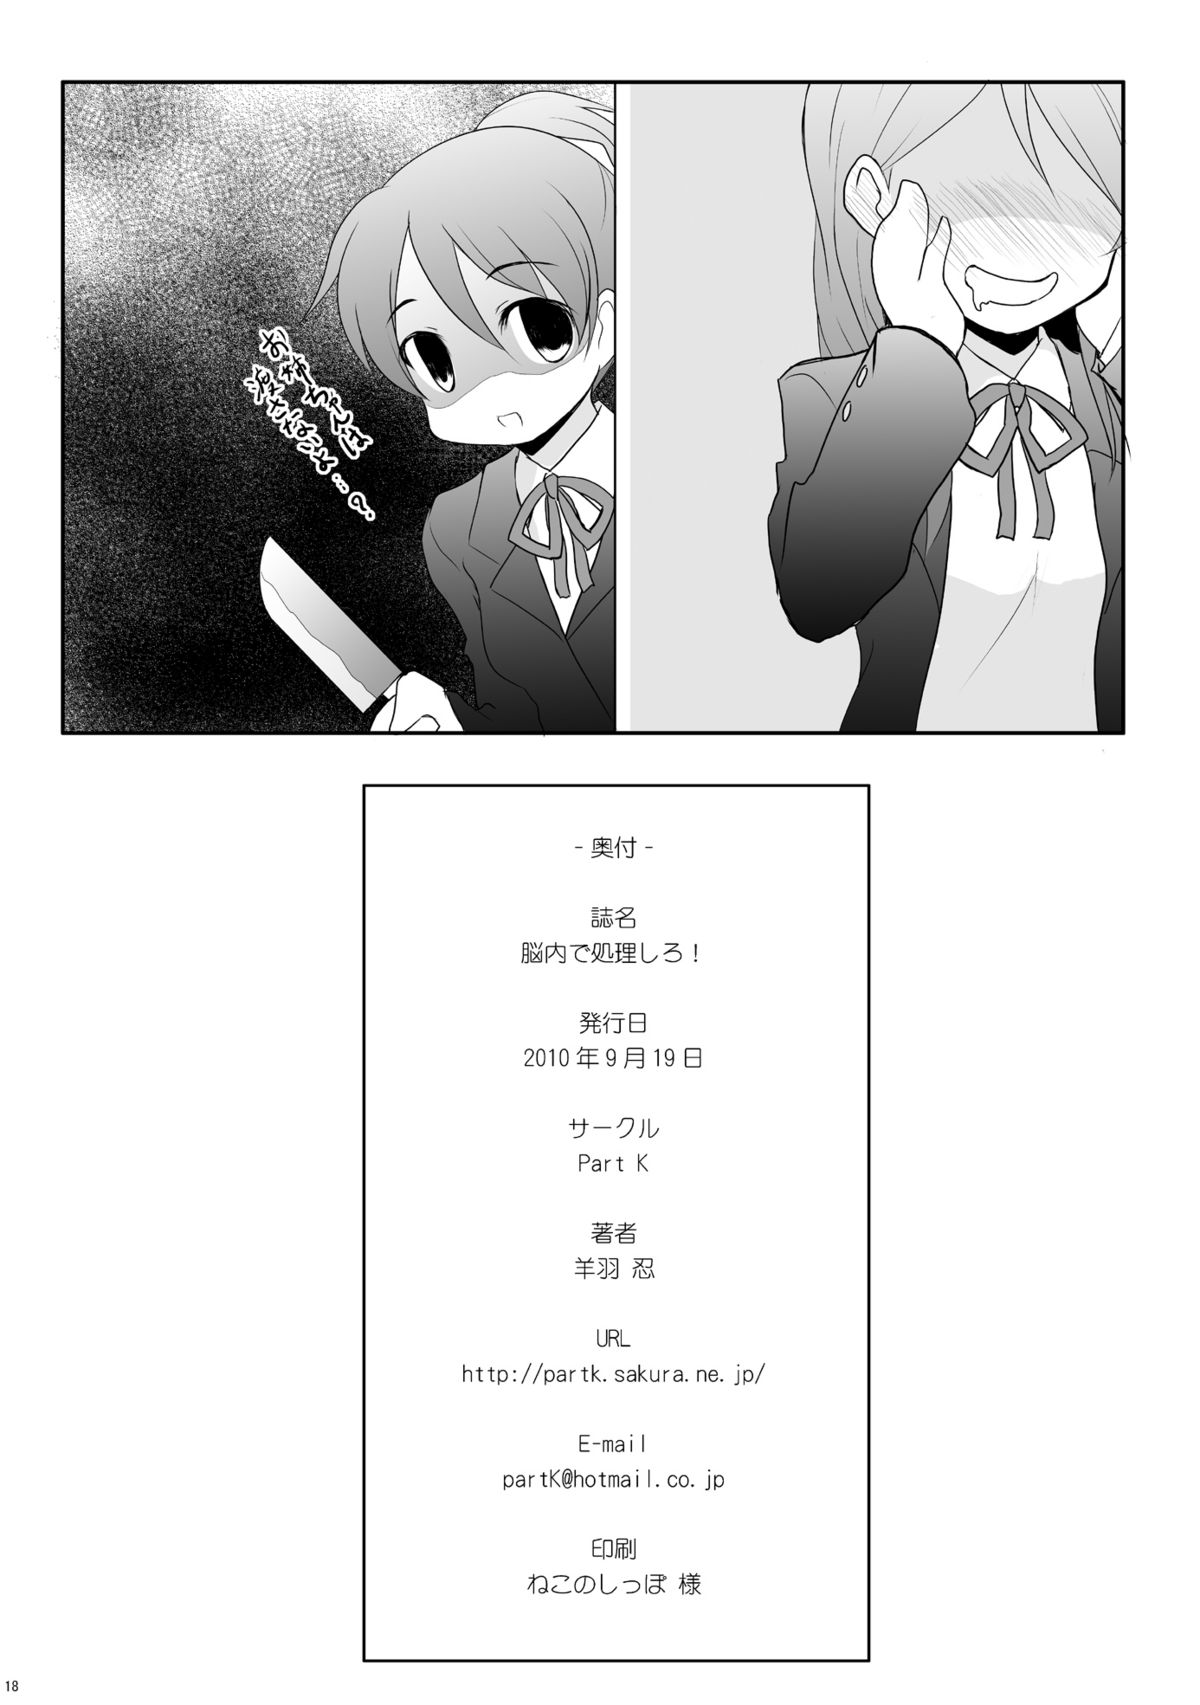 [Part K (Hitsujibane Shinobu)] Nounai De Shori Shiro! (K-ON!) [Digital] page 15 full